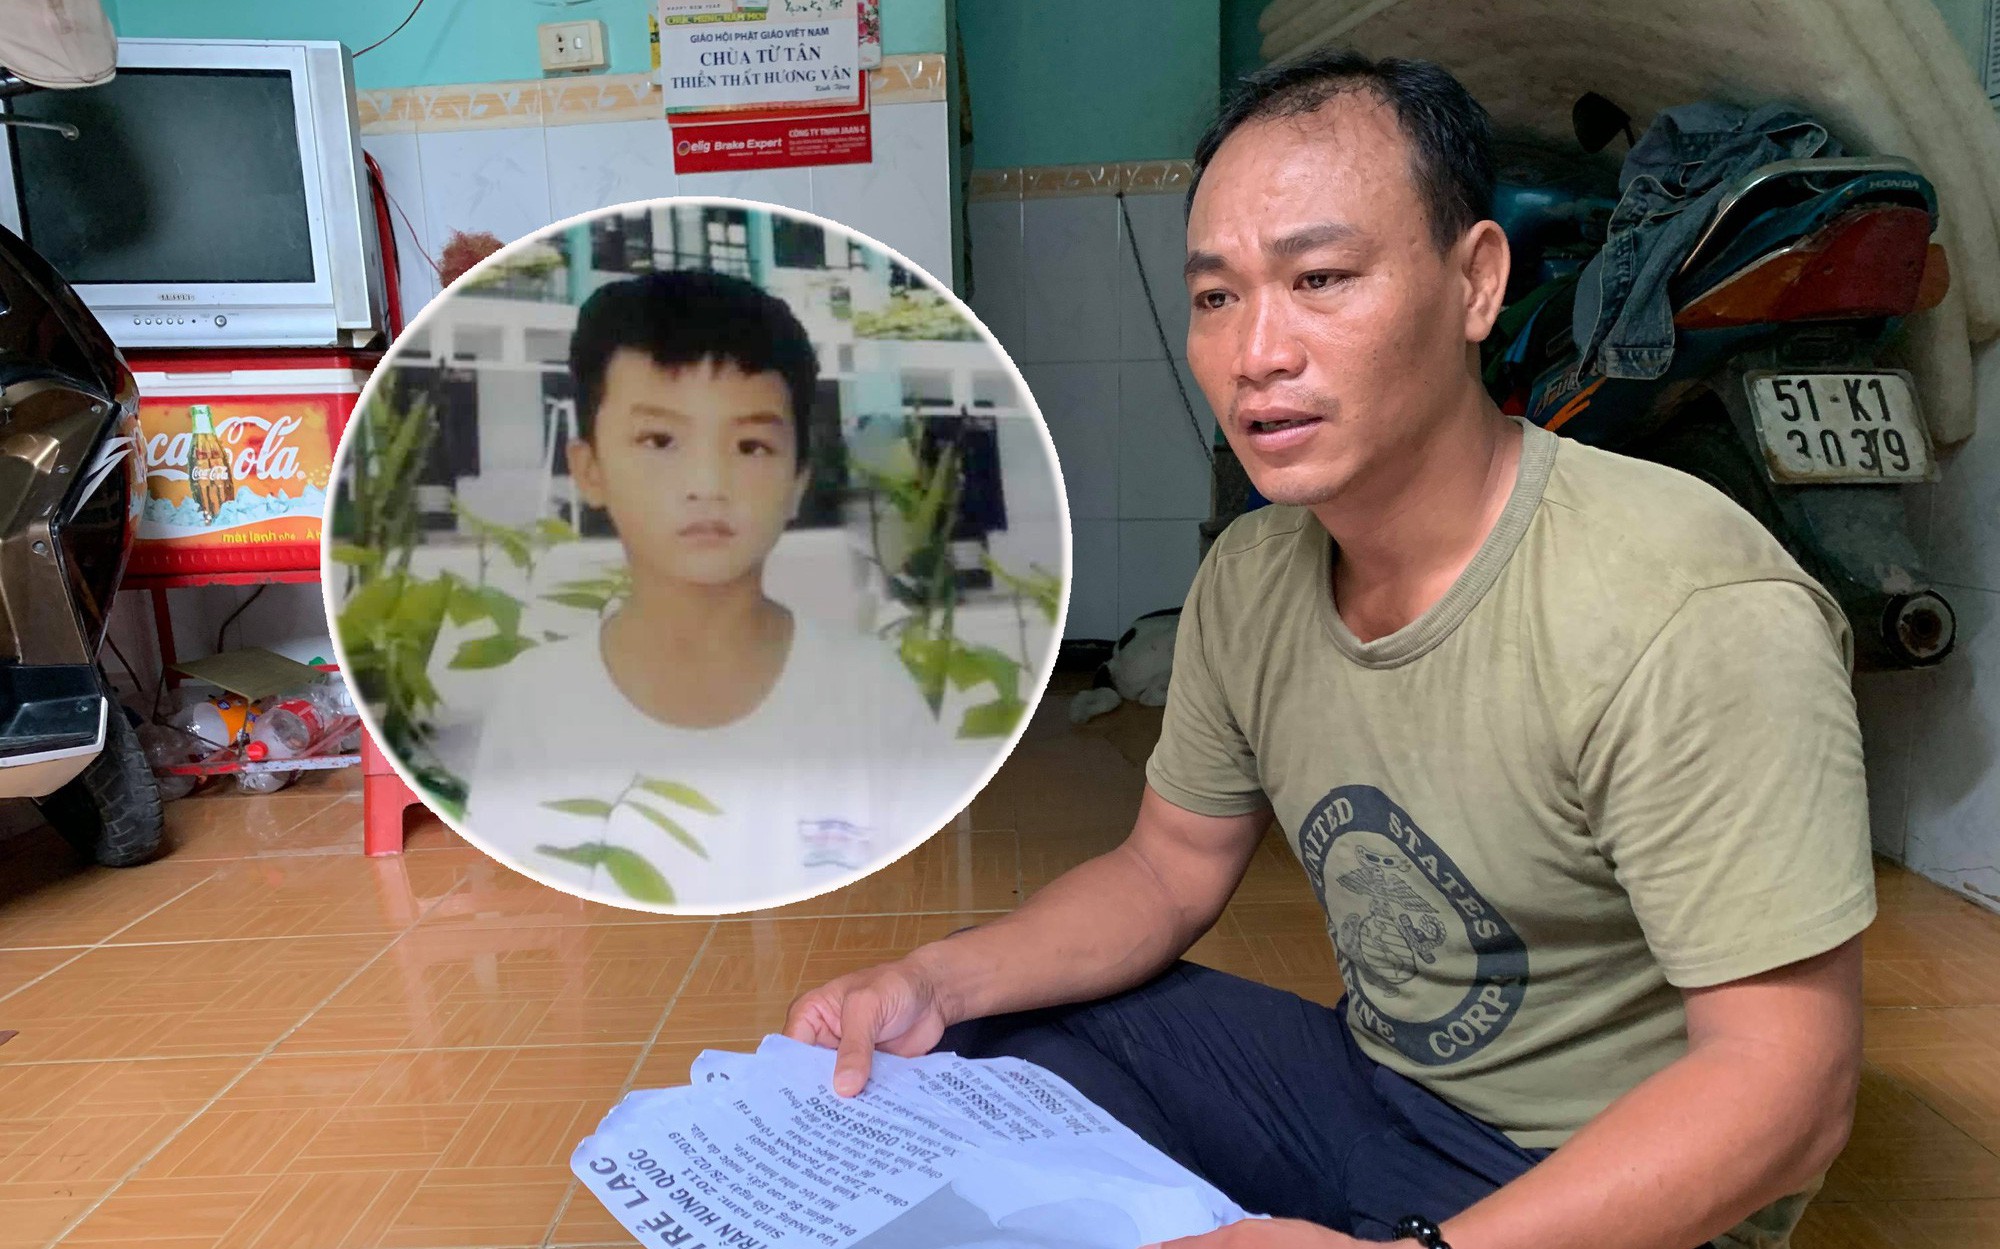 Để con trai 8 tuổi ở nhà một mình, người cha ở Sài Gòn hối hận vì bé mất tích bí ẩn suốt nhiều tháng